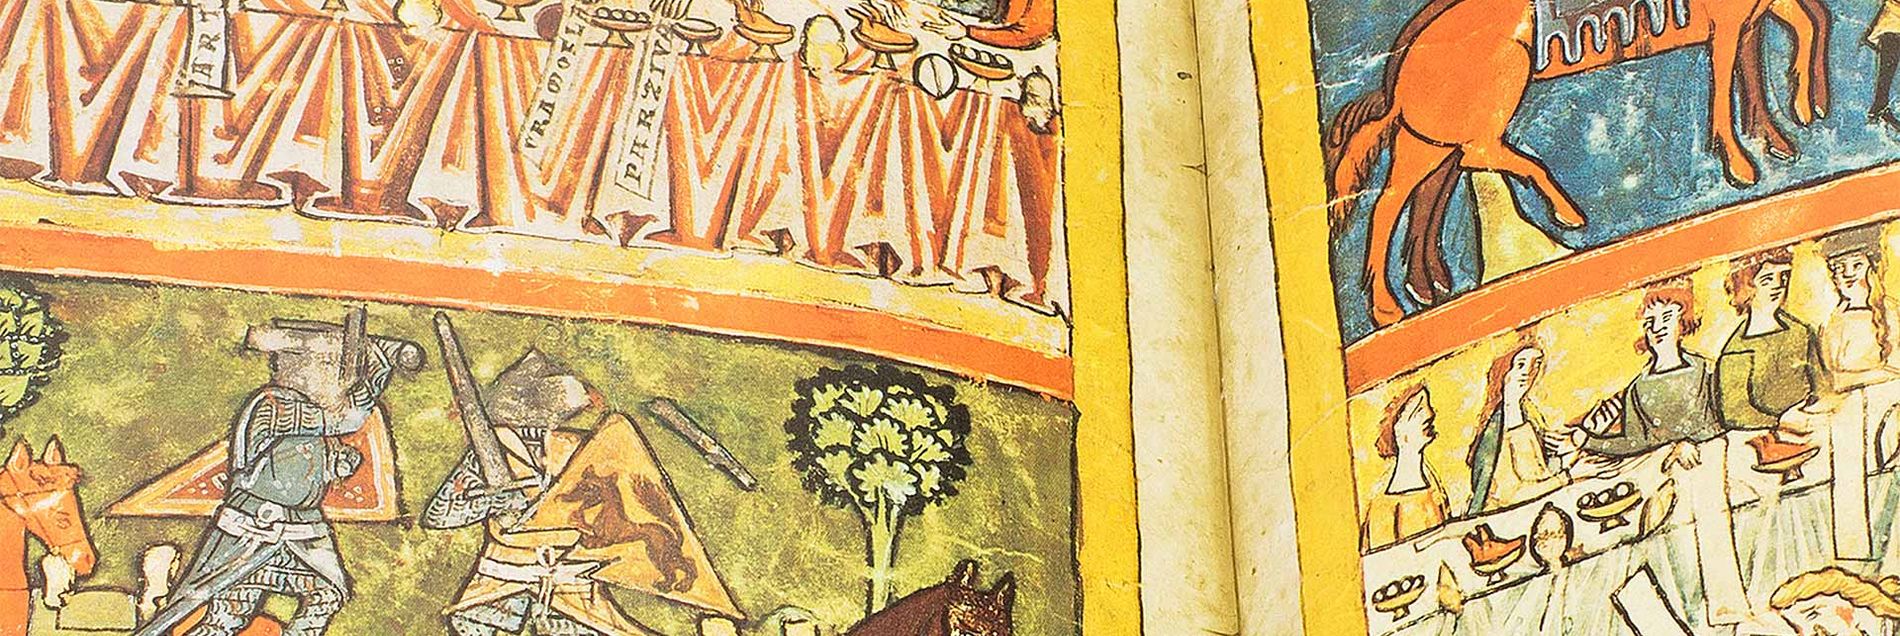 <i>“Eine frühe Abschrift des berühmten Ritterepos mit vier prächtigen Bildseiten”</i>